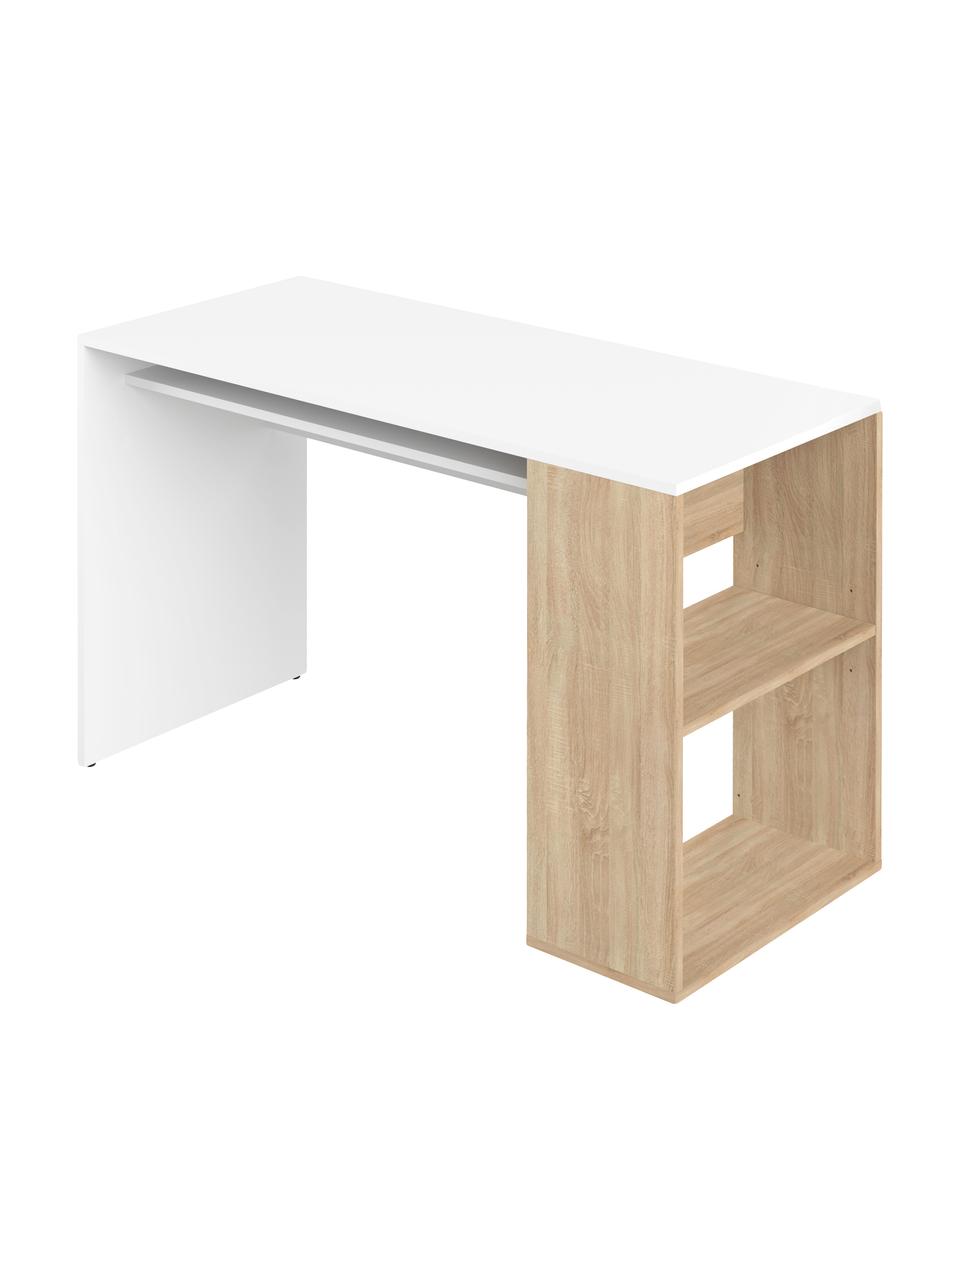 Schreibtisch Yale mit Stauraum, Spanplatte, melaminbeschichtet, Weiß, Eichenholz, B 114 x T 50 cm